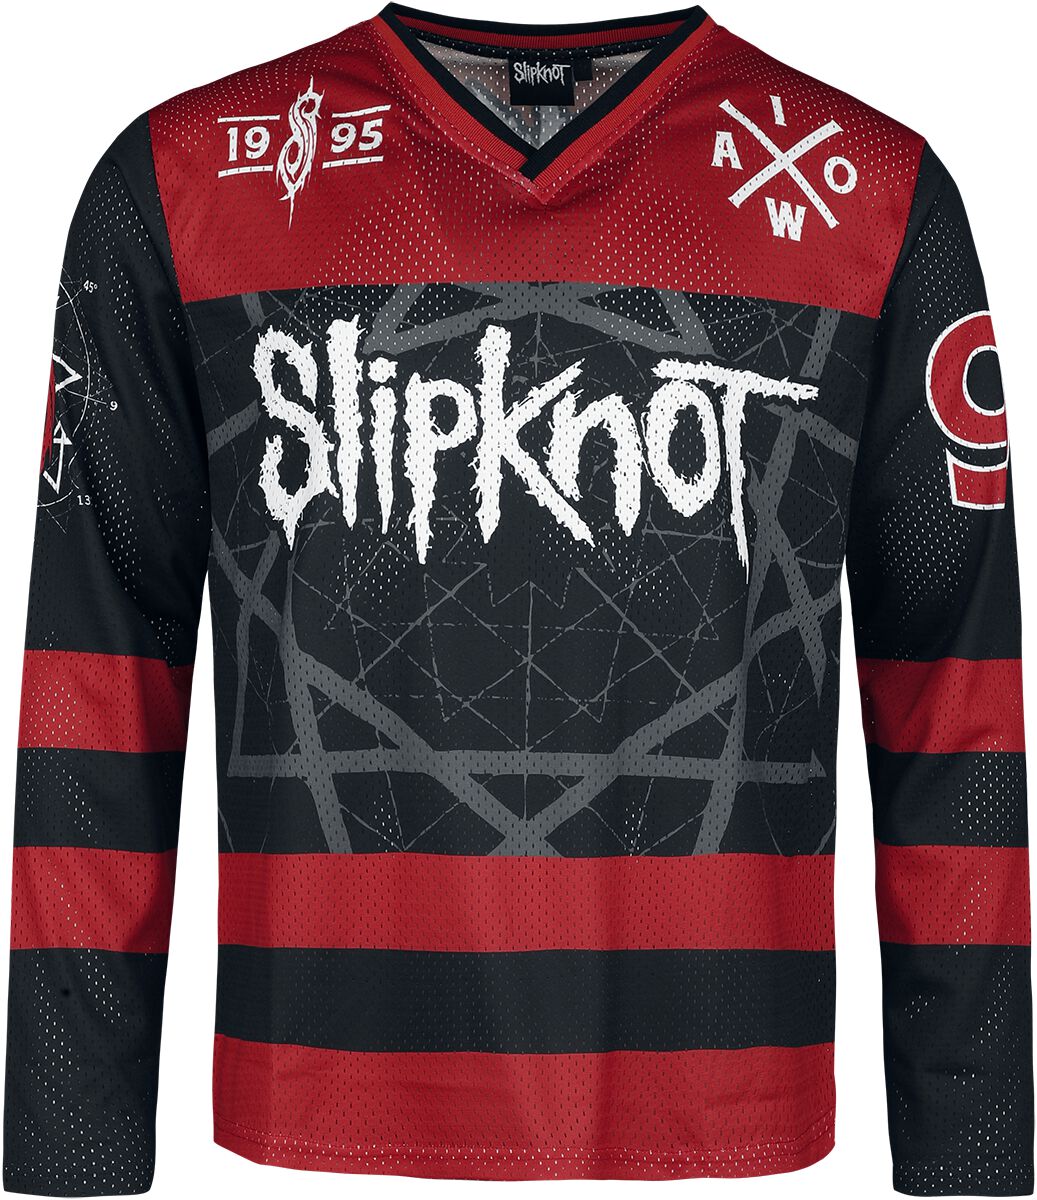 Slipknot Trikot - Des Moines - S bis XL - für Männer - Größe M - multicolor  - EMP exklusives Merchandise! von Slipknot